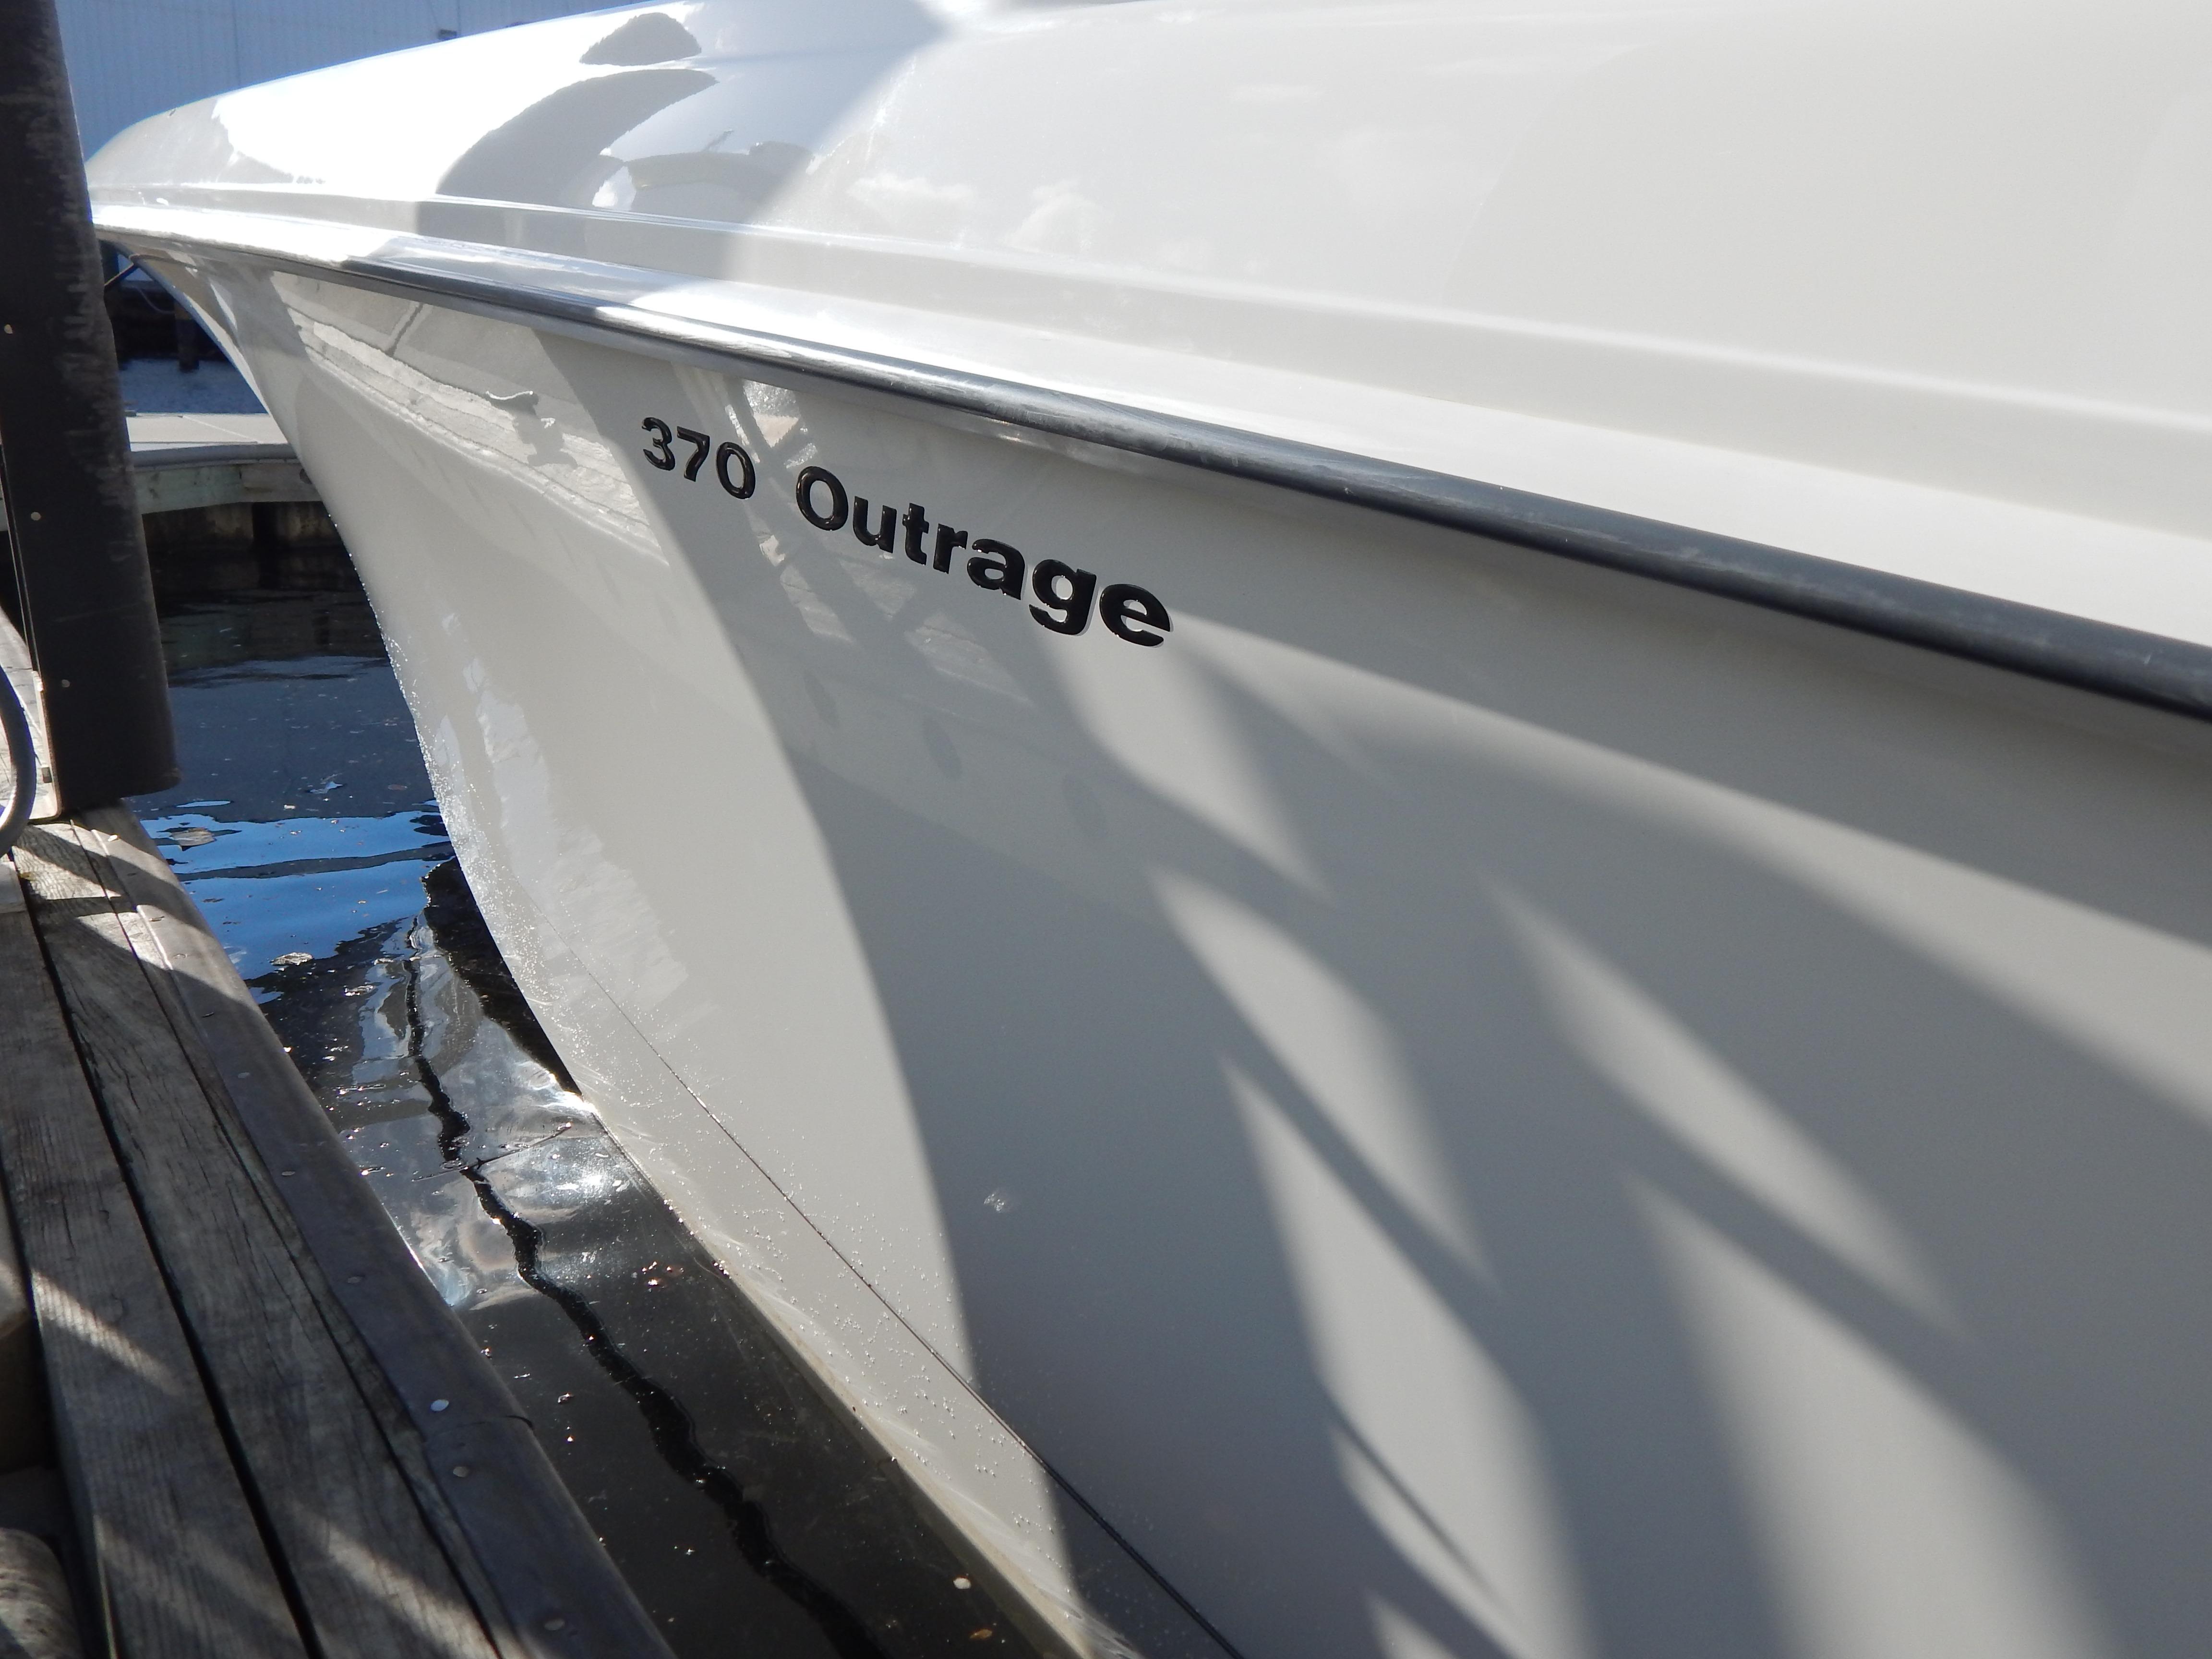 2013 Boston Whaler 370 Outrage